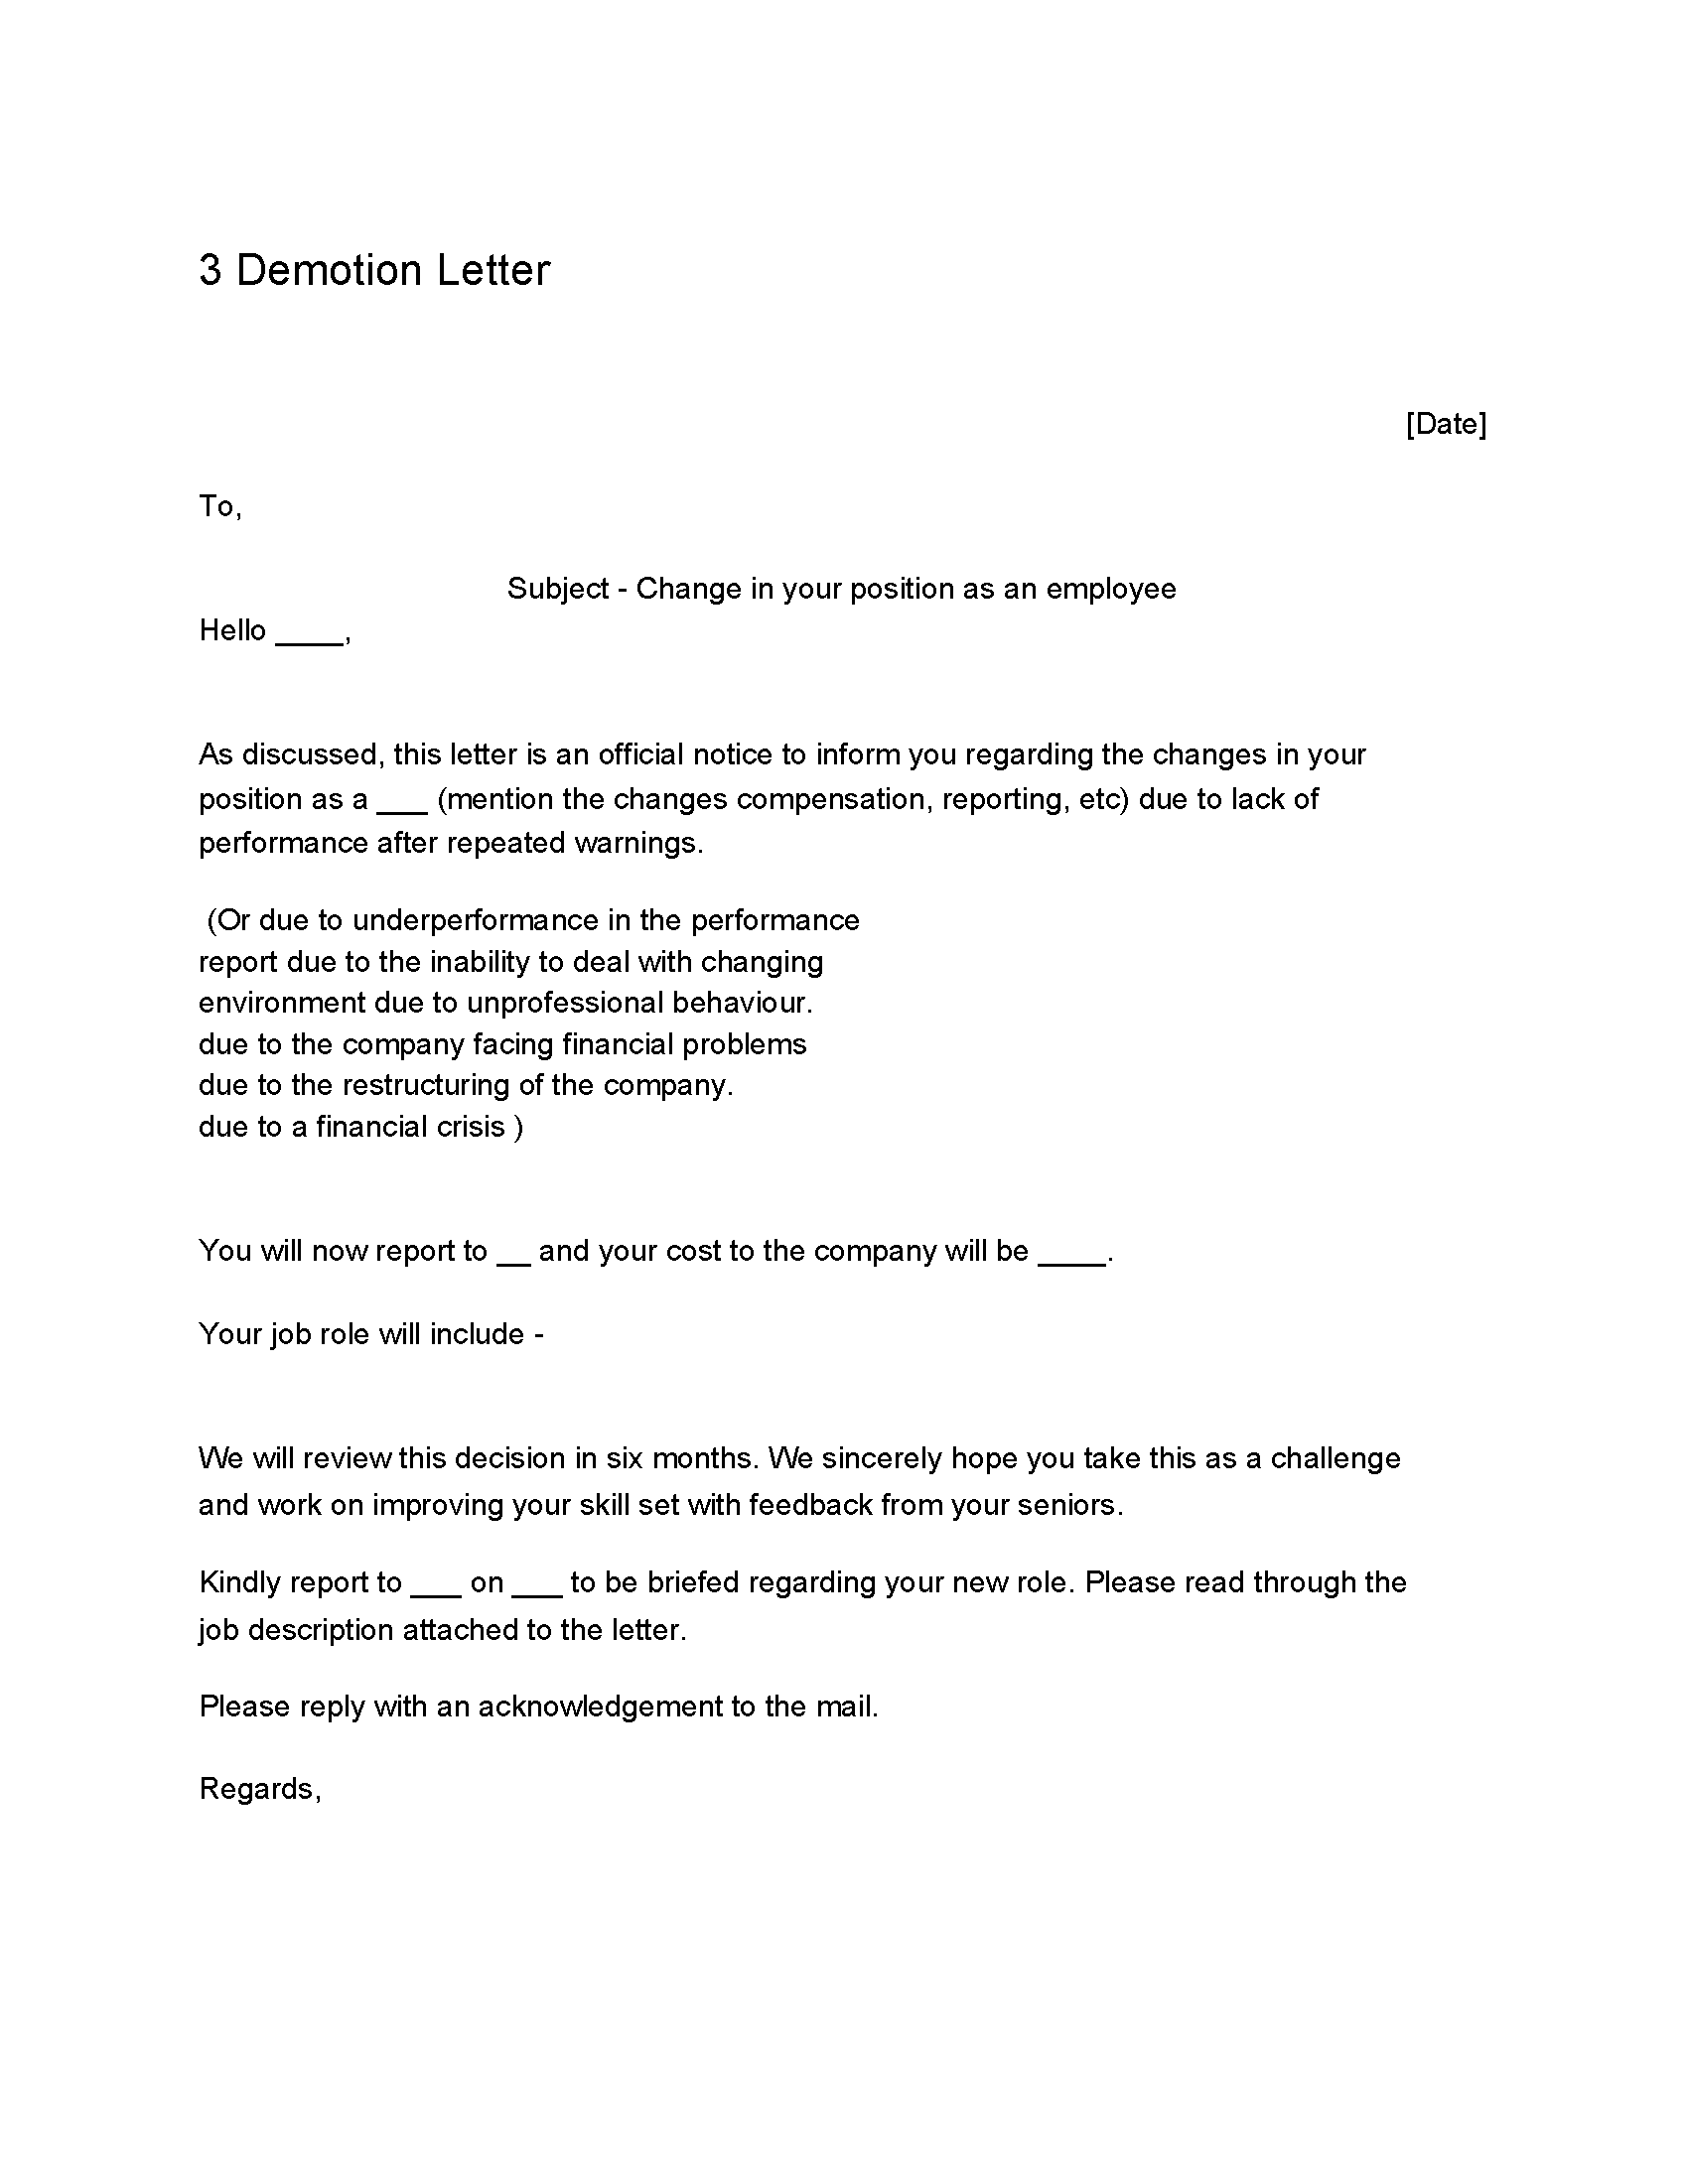 10 - Demotion Letter